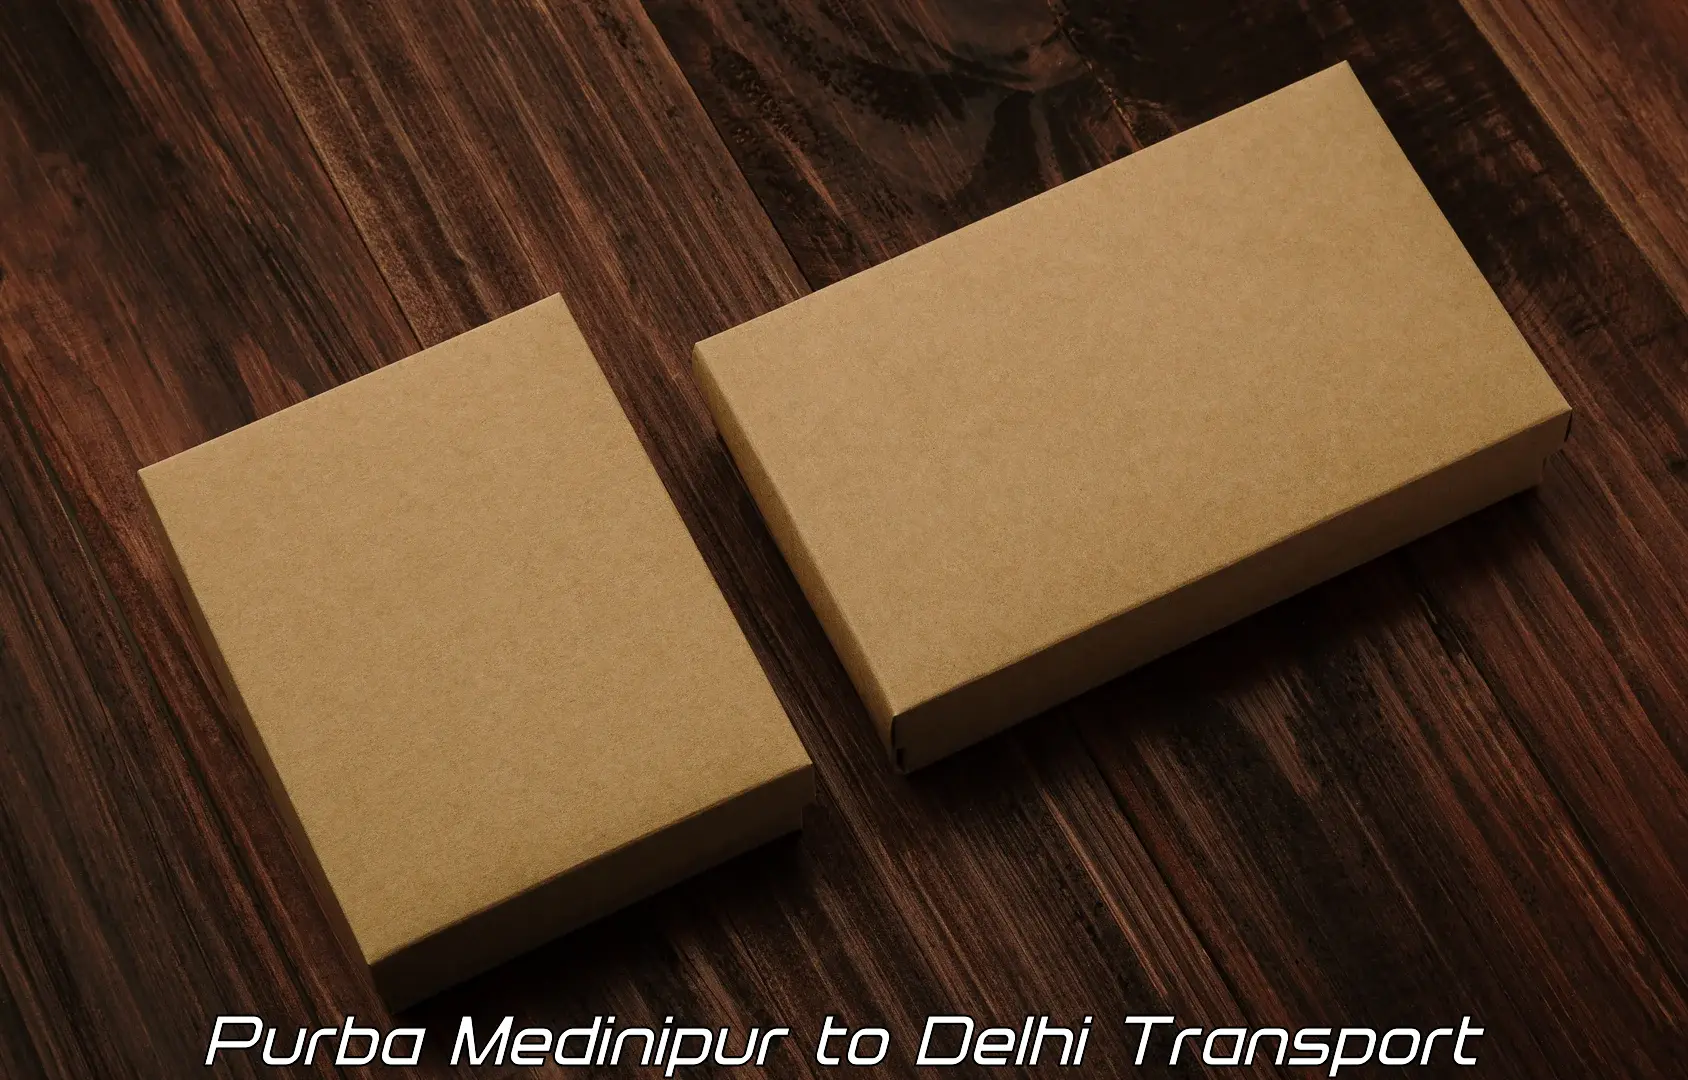 Transportation solution services Purba Medinipur to IIT Delhi